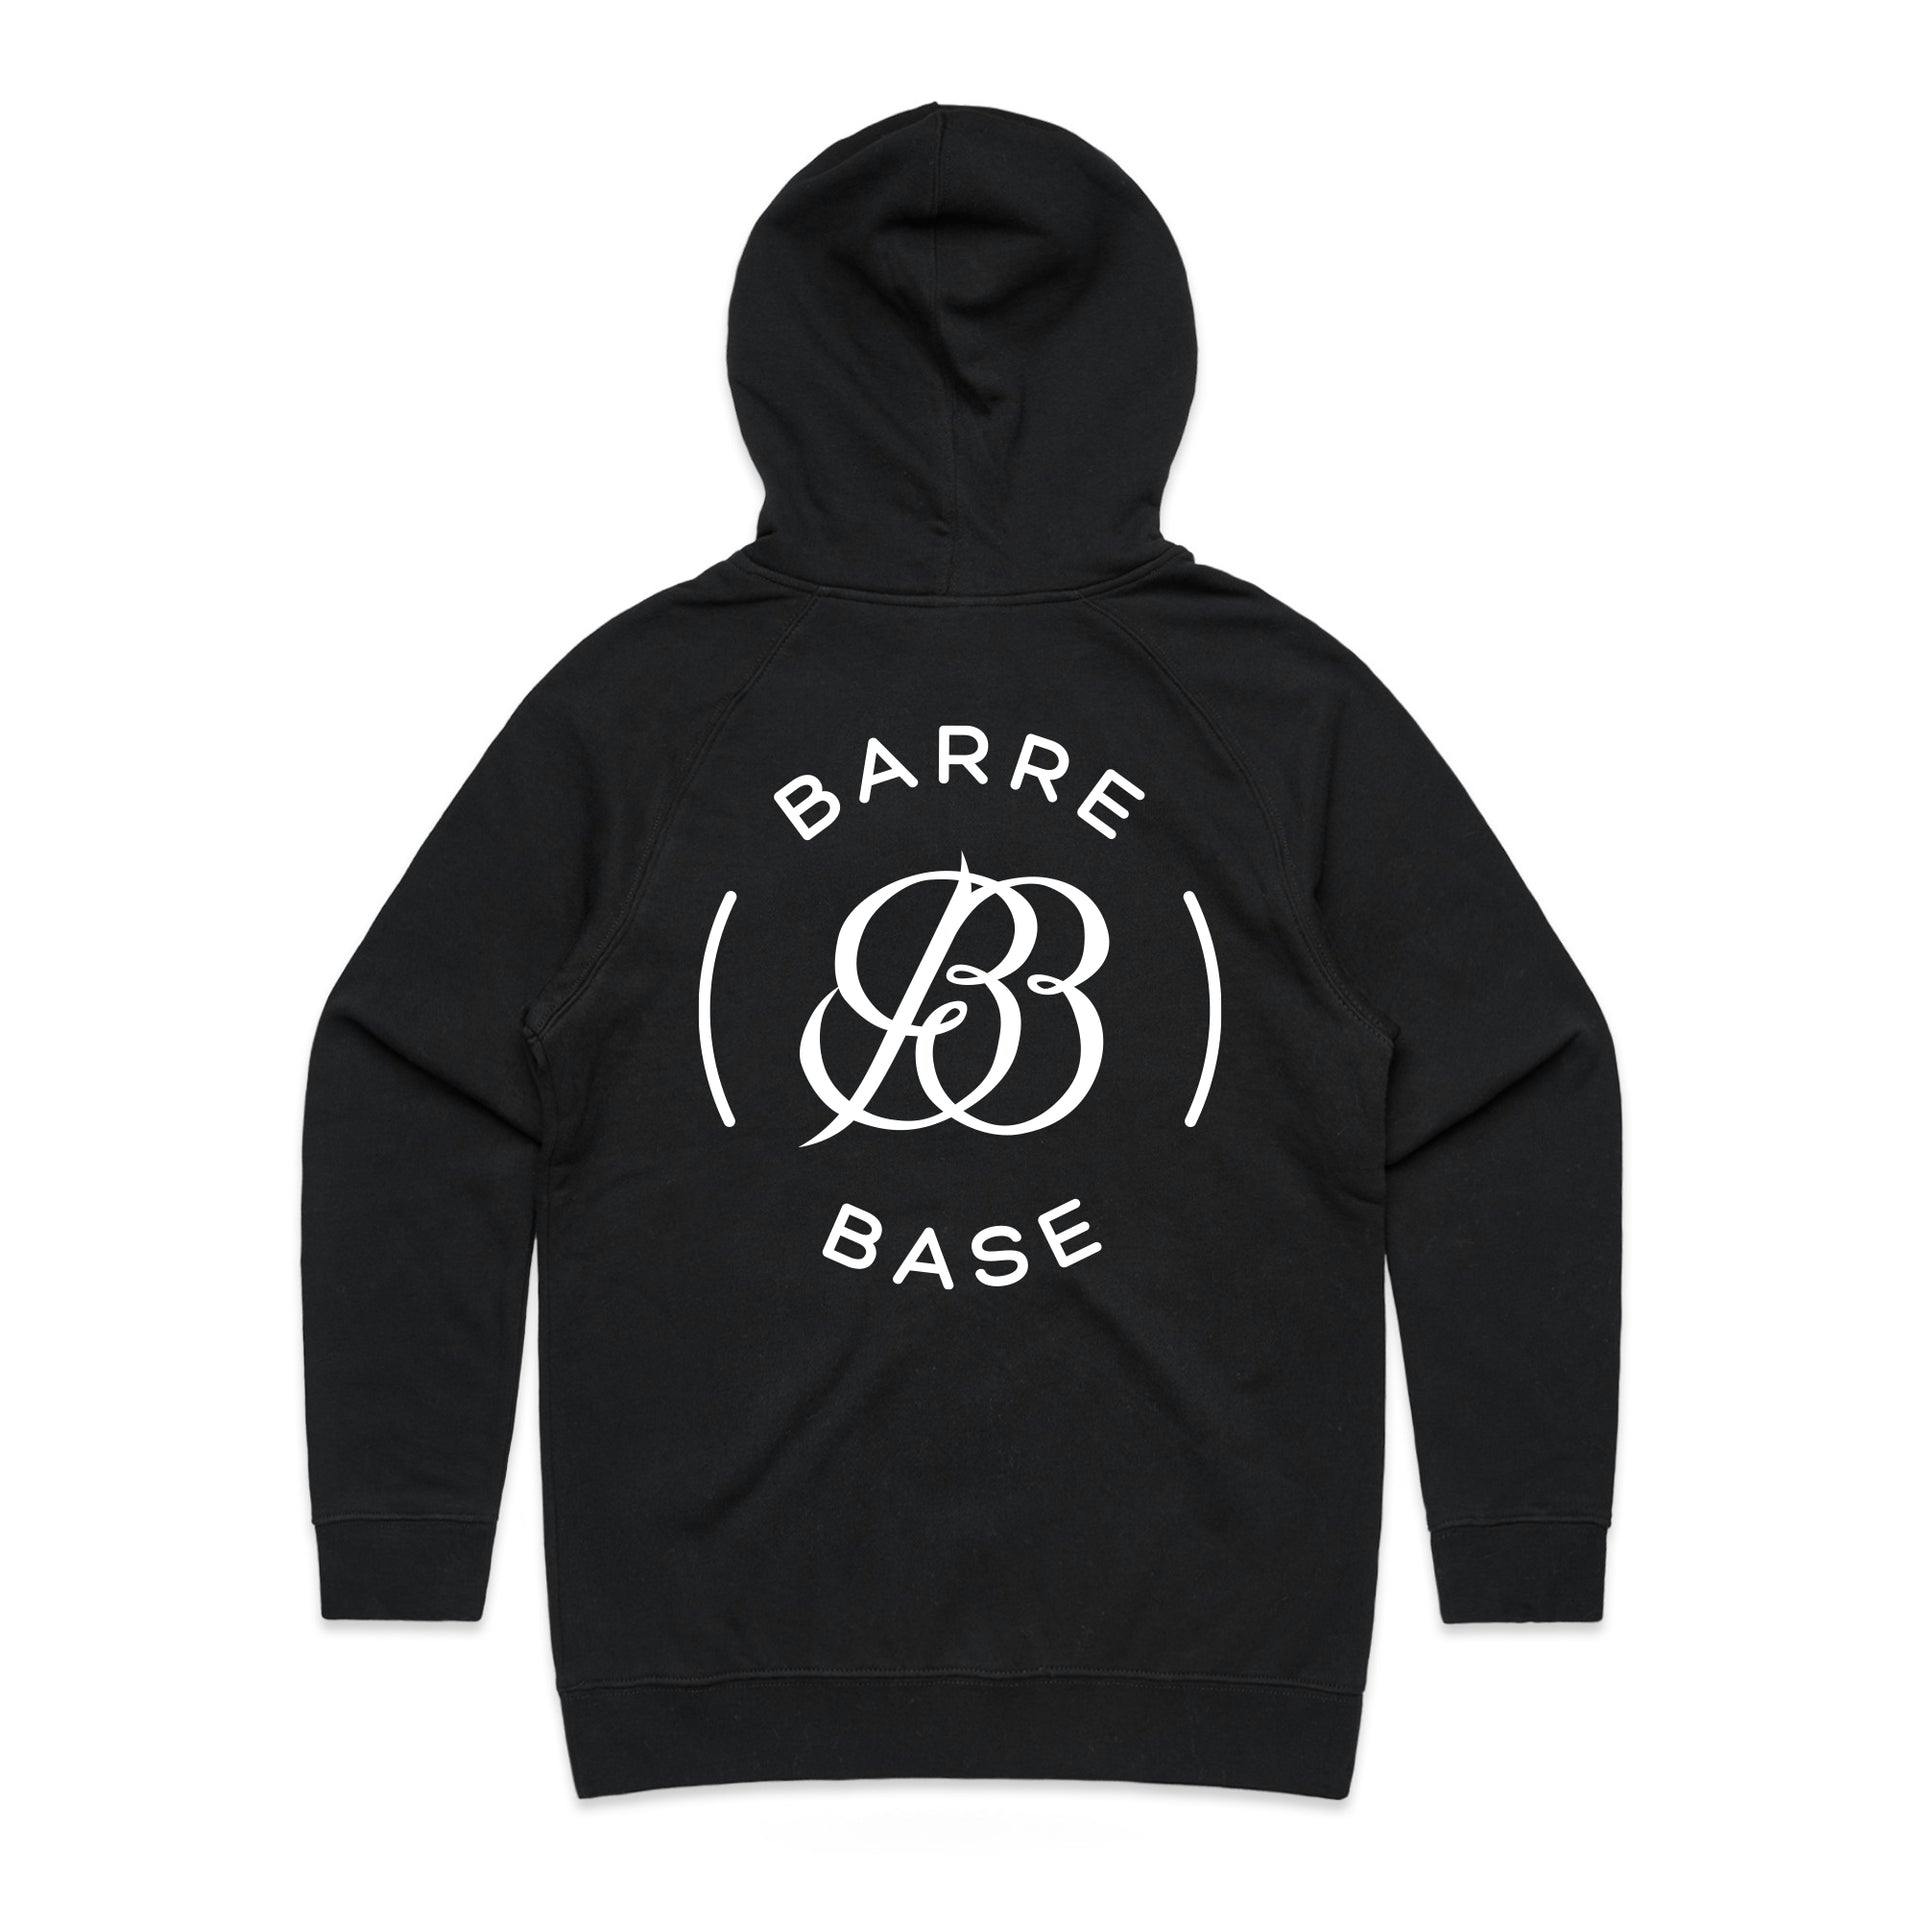 Barre Base Classic Hoodie